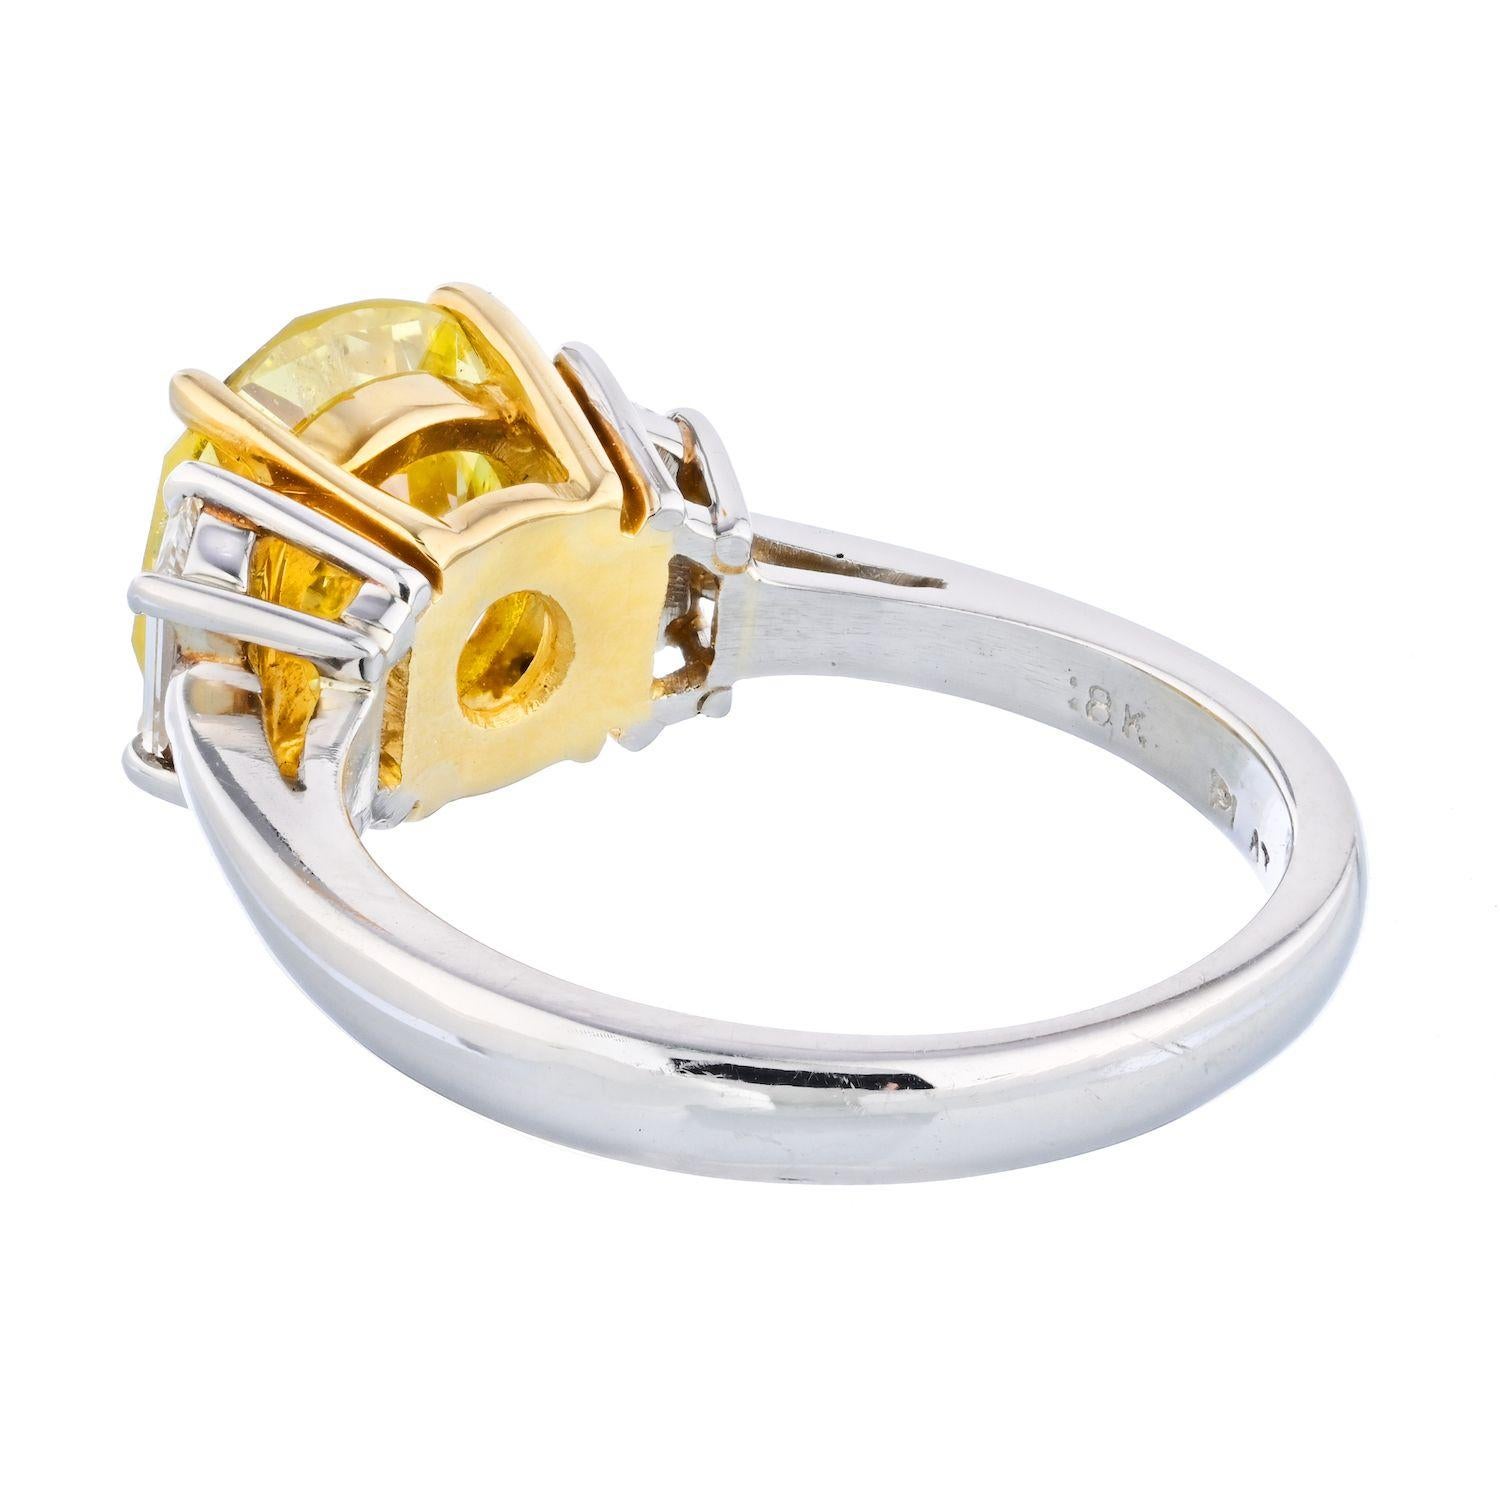 Dies ist eine sehr einzigartige drei Stein Diamant Verlobungsring in Platin und 18k Gelbgold mit einem feinen runden Brillantschliff Diamant montiert gefertigt: es ist ein 2,90 Karat runden Brillantschliff, die von GIA als Fancy Intense Yellow